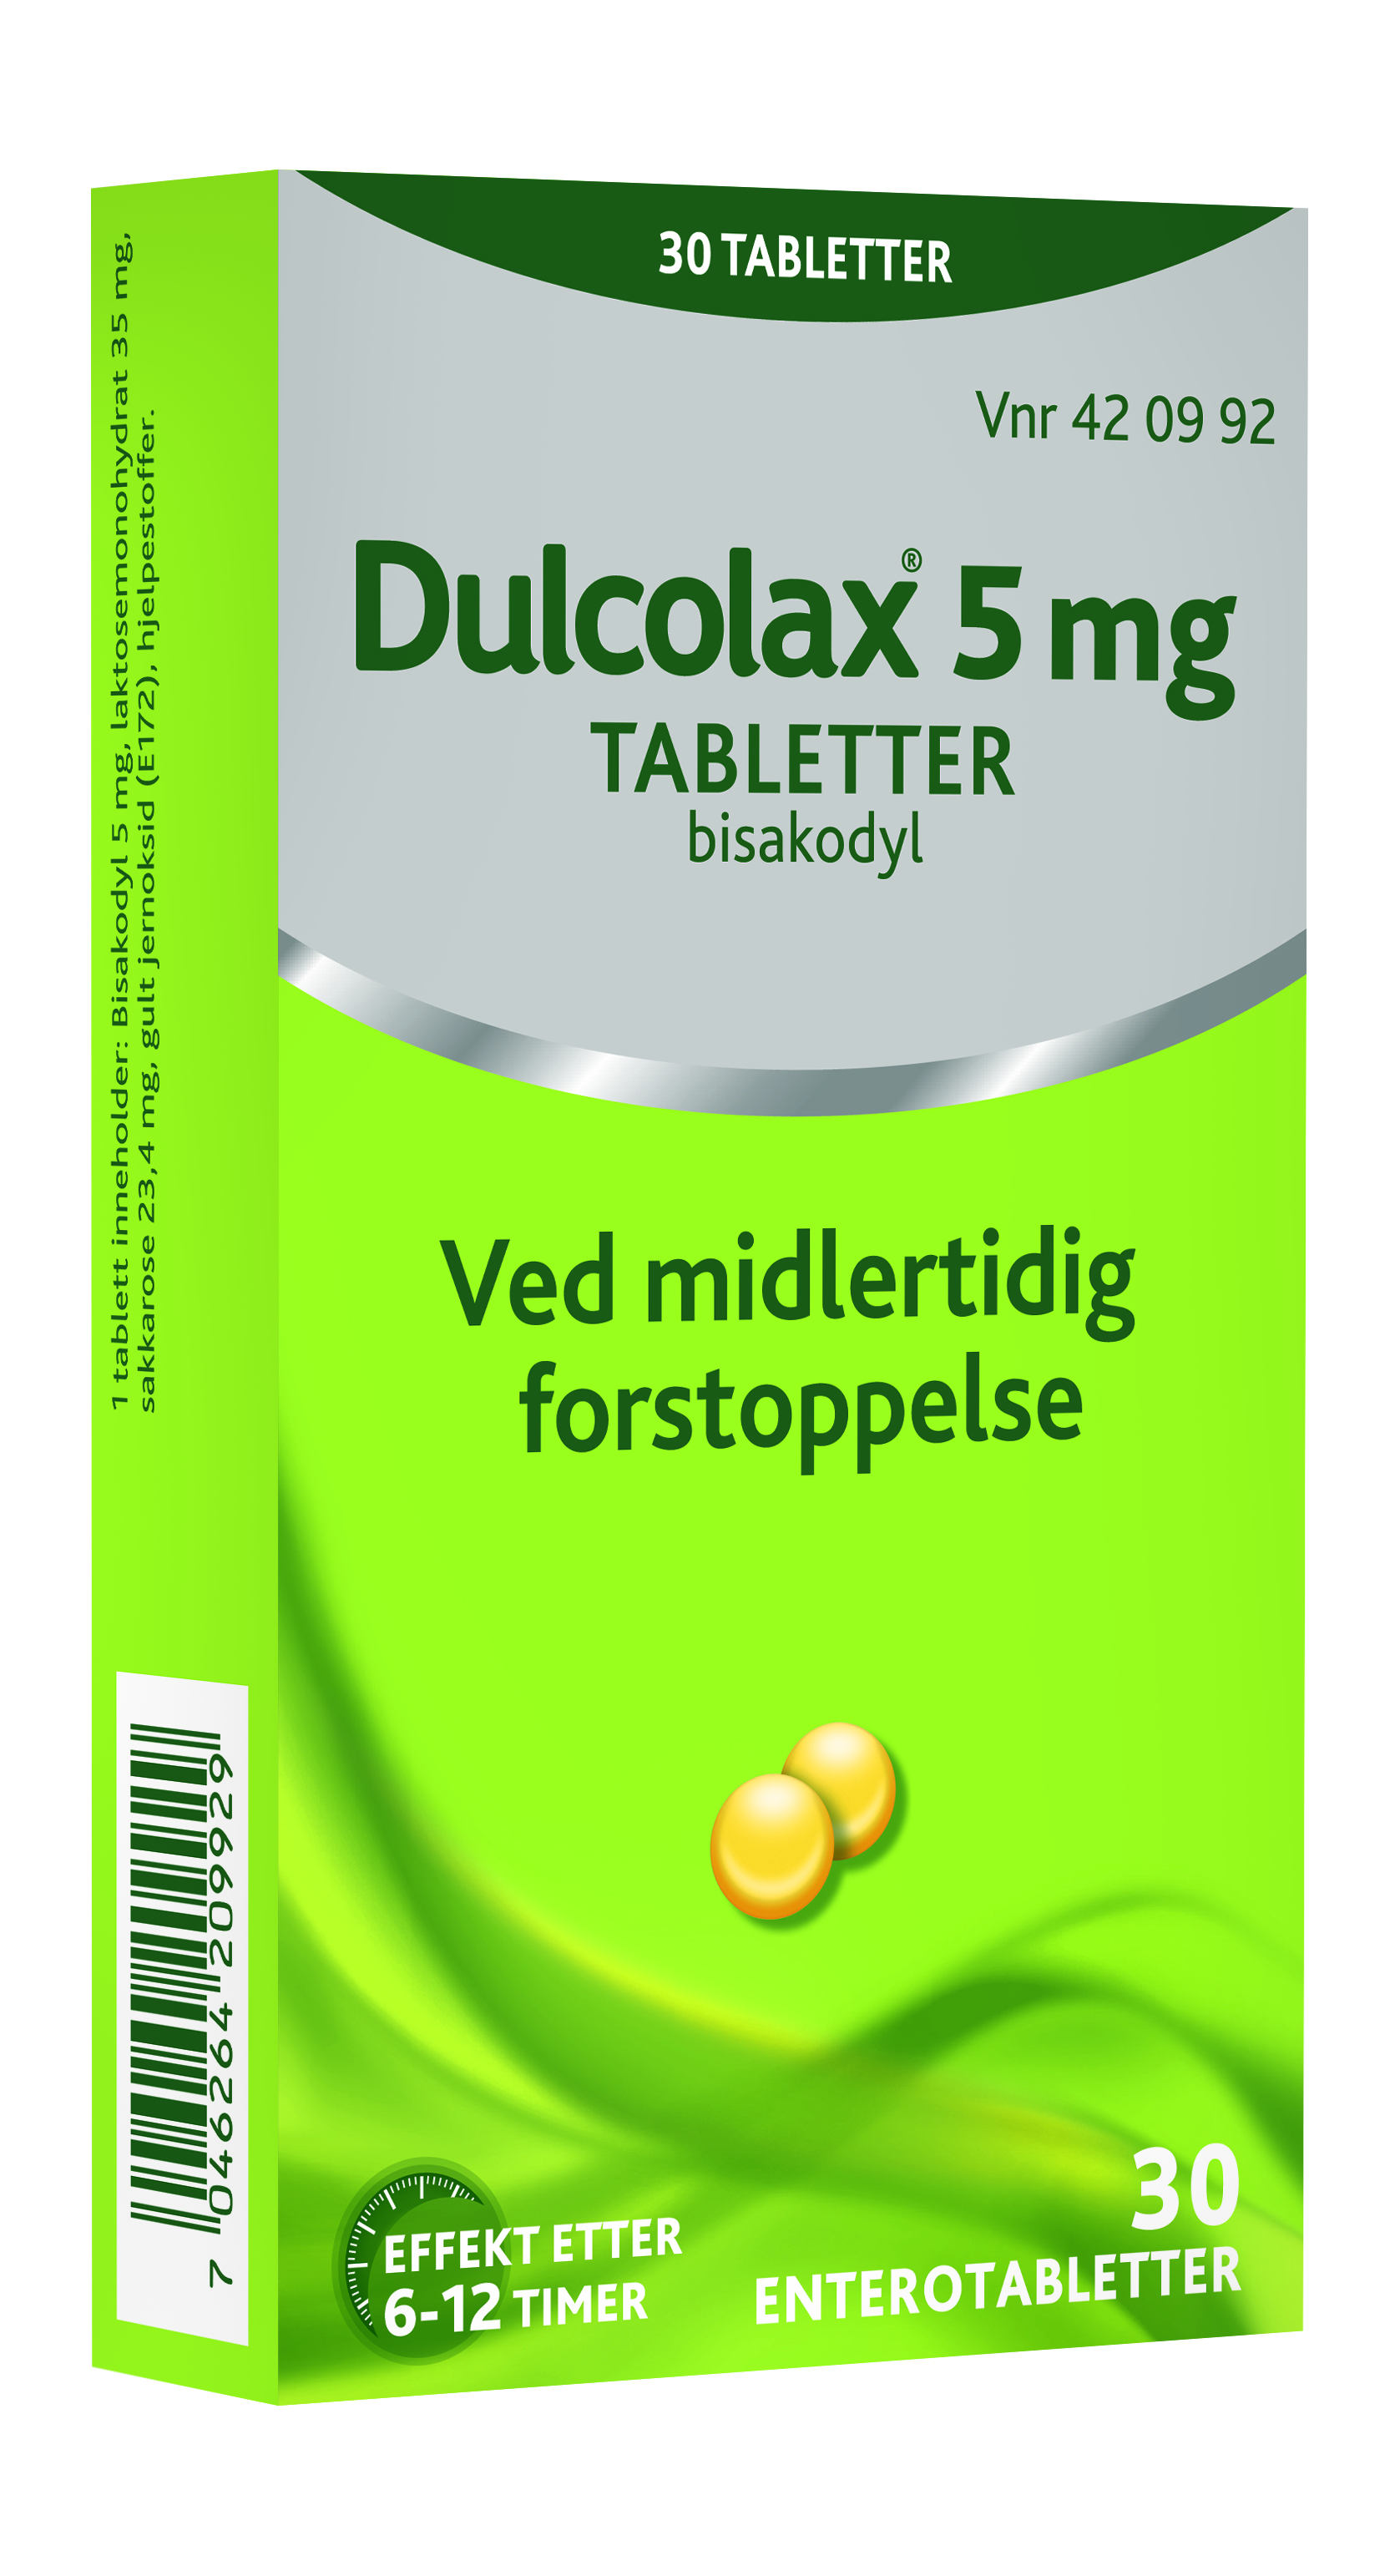 Dulcolax Enterotabletter 5mg, 30 stk. på brett